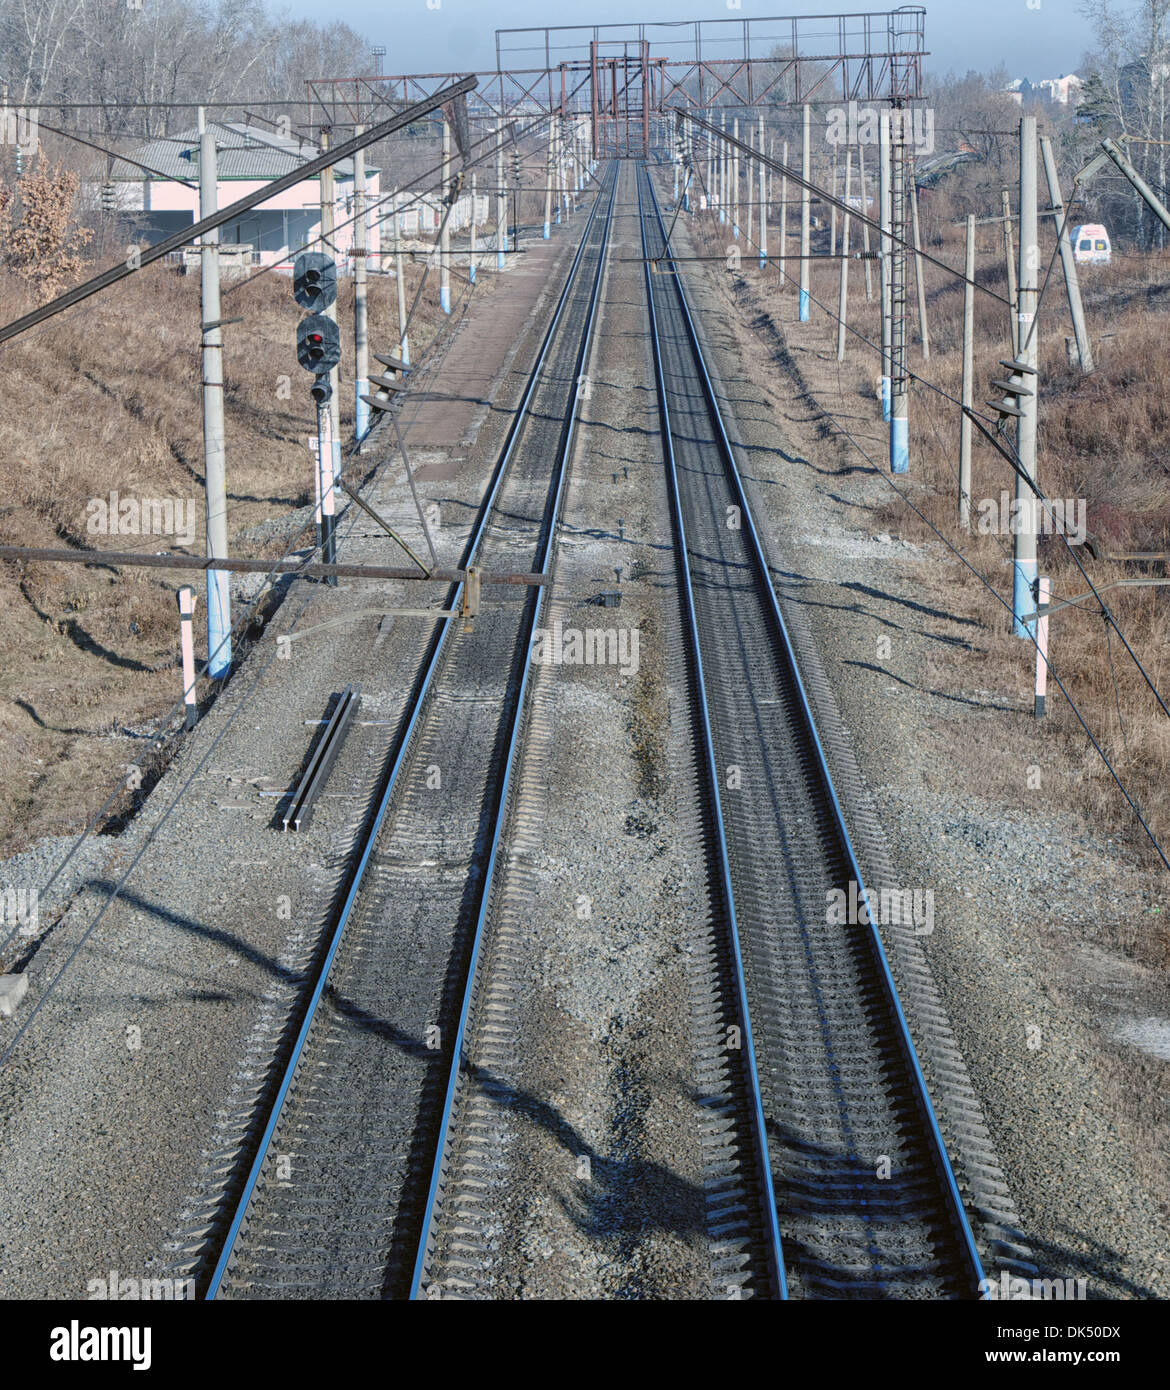 Ferrovia pista metallica con letto binario 2 di binari ferroviari con i supporti per la sospensione del filo di contatto Foto Stock